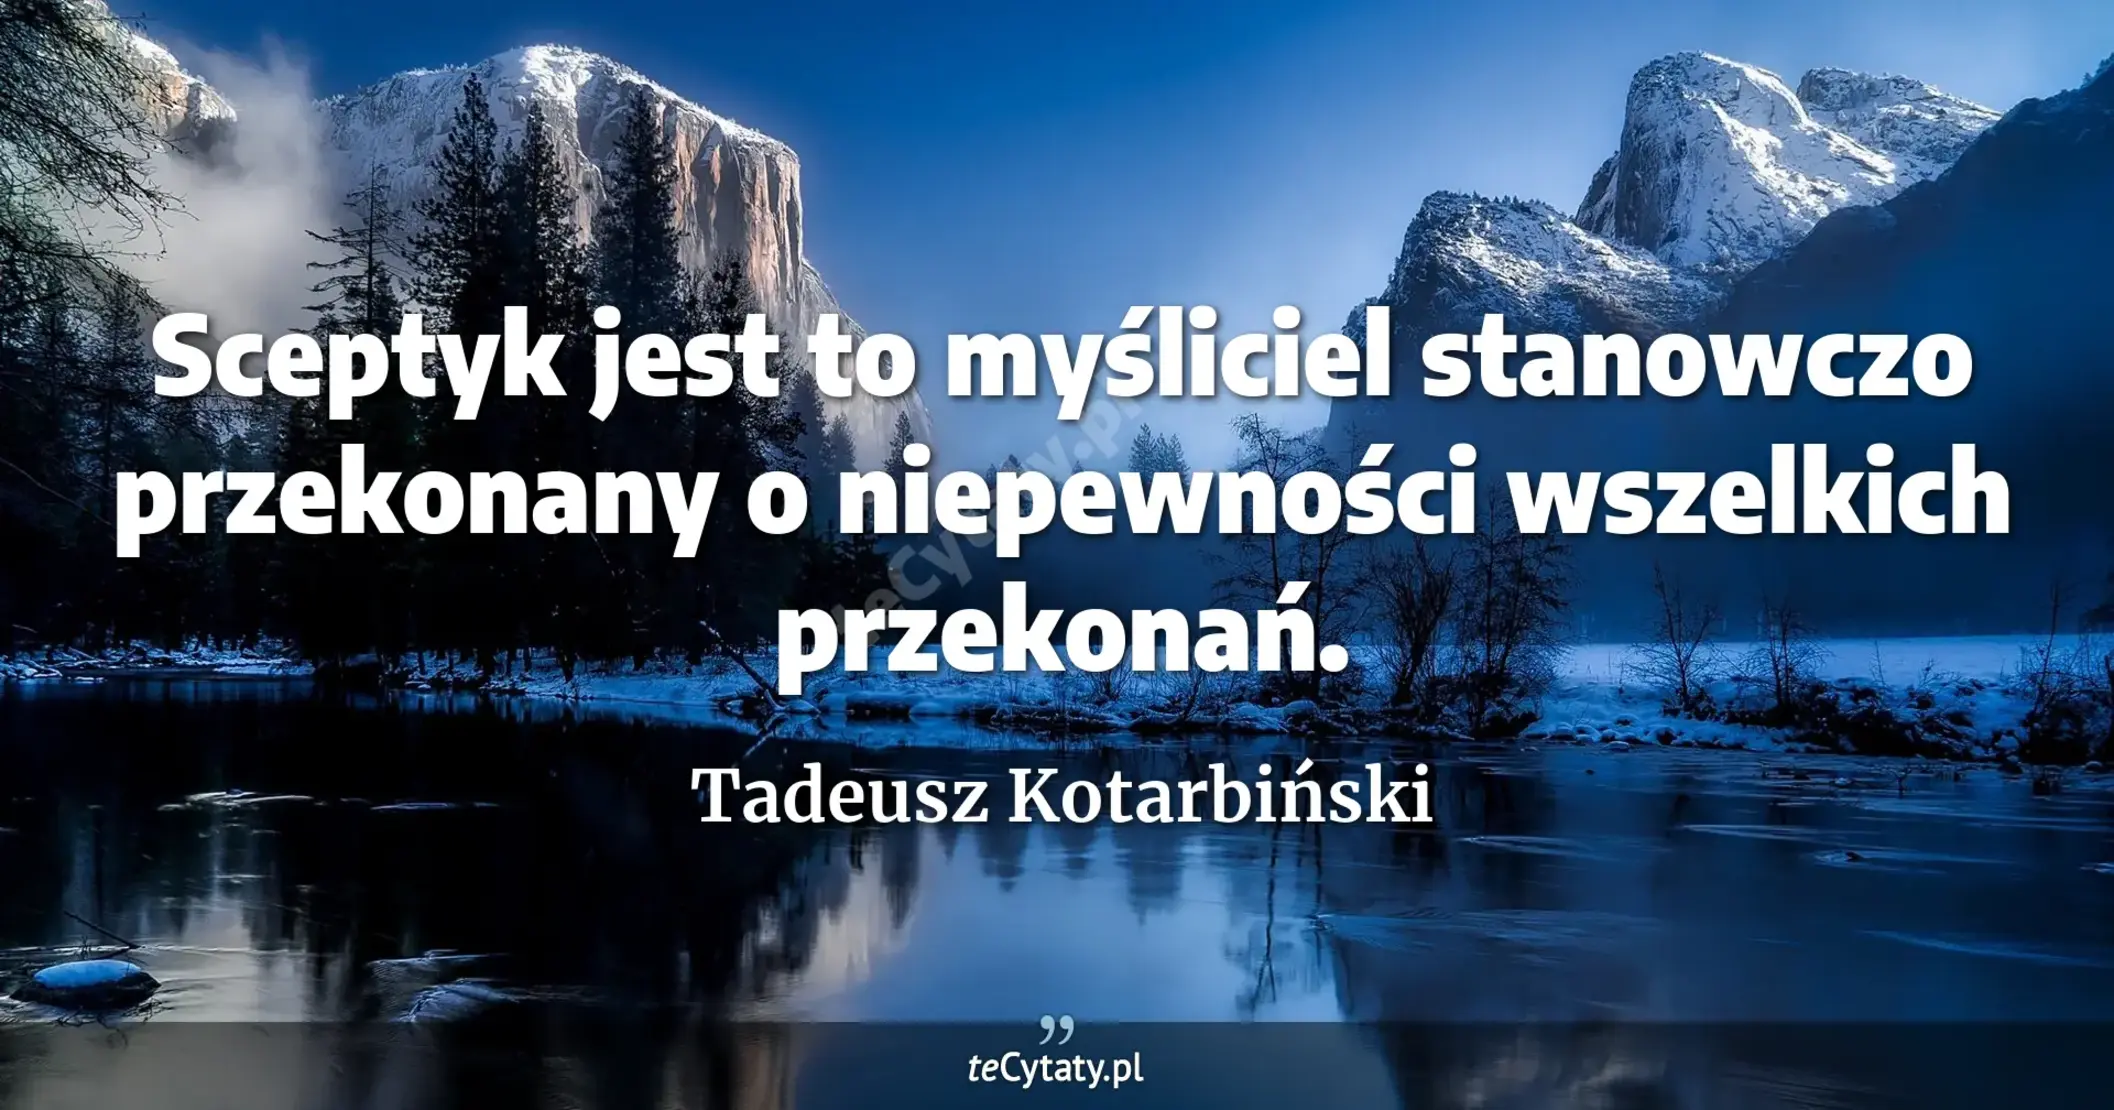 Sceptyk jest to myśliciel stanowczo przekonany o niepewności wszelkich przekonań. - Tadeusz Kotarbiński